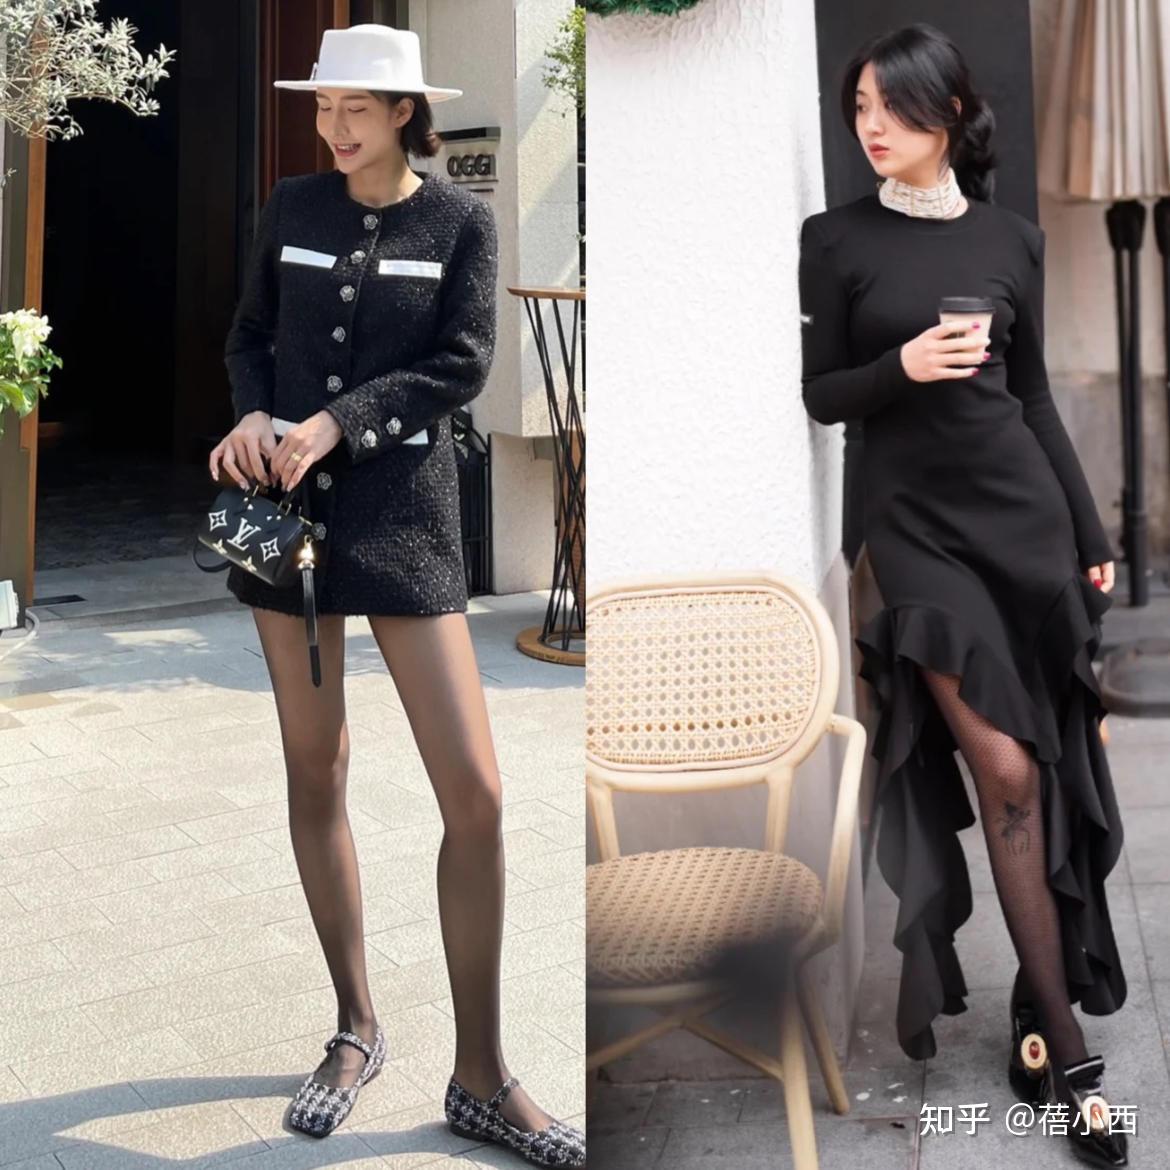 今夏最新流行露背上衣36款一次看完! 掌握不招搖的性感!|流行速遞-VOGUE時尚網 | Vogue Taiwan